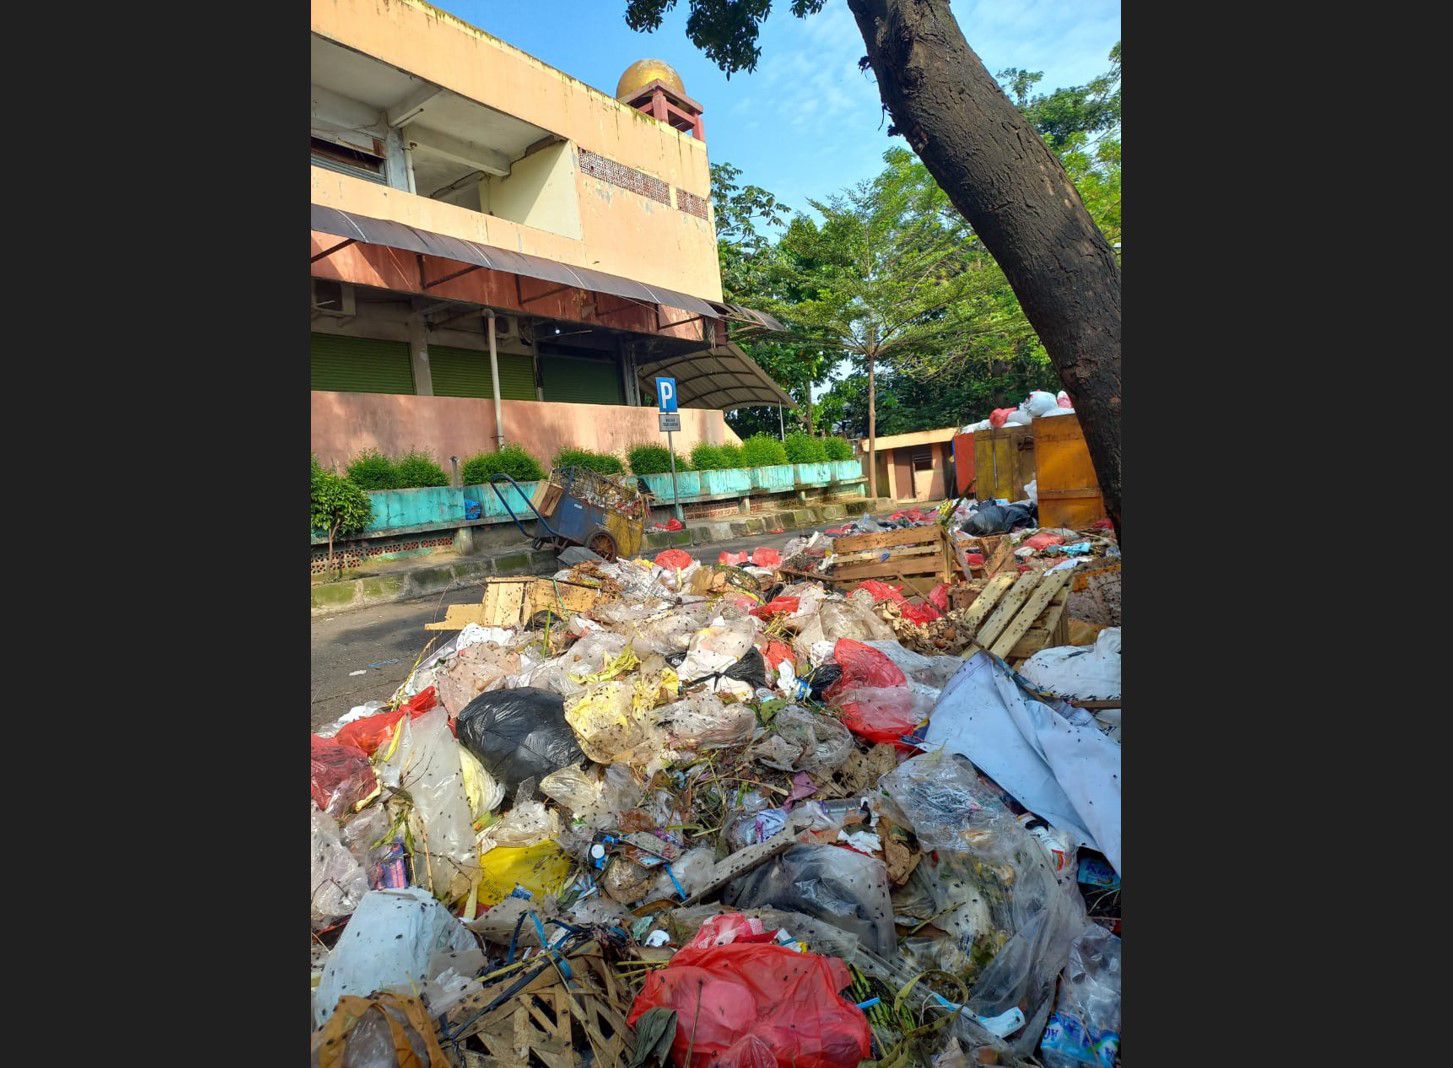 Hampir Sebulan Tak Diangkut, Sampah di Pasar Agung Menumpuk